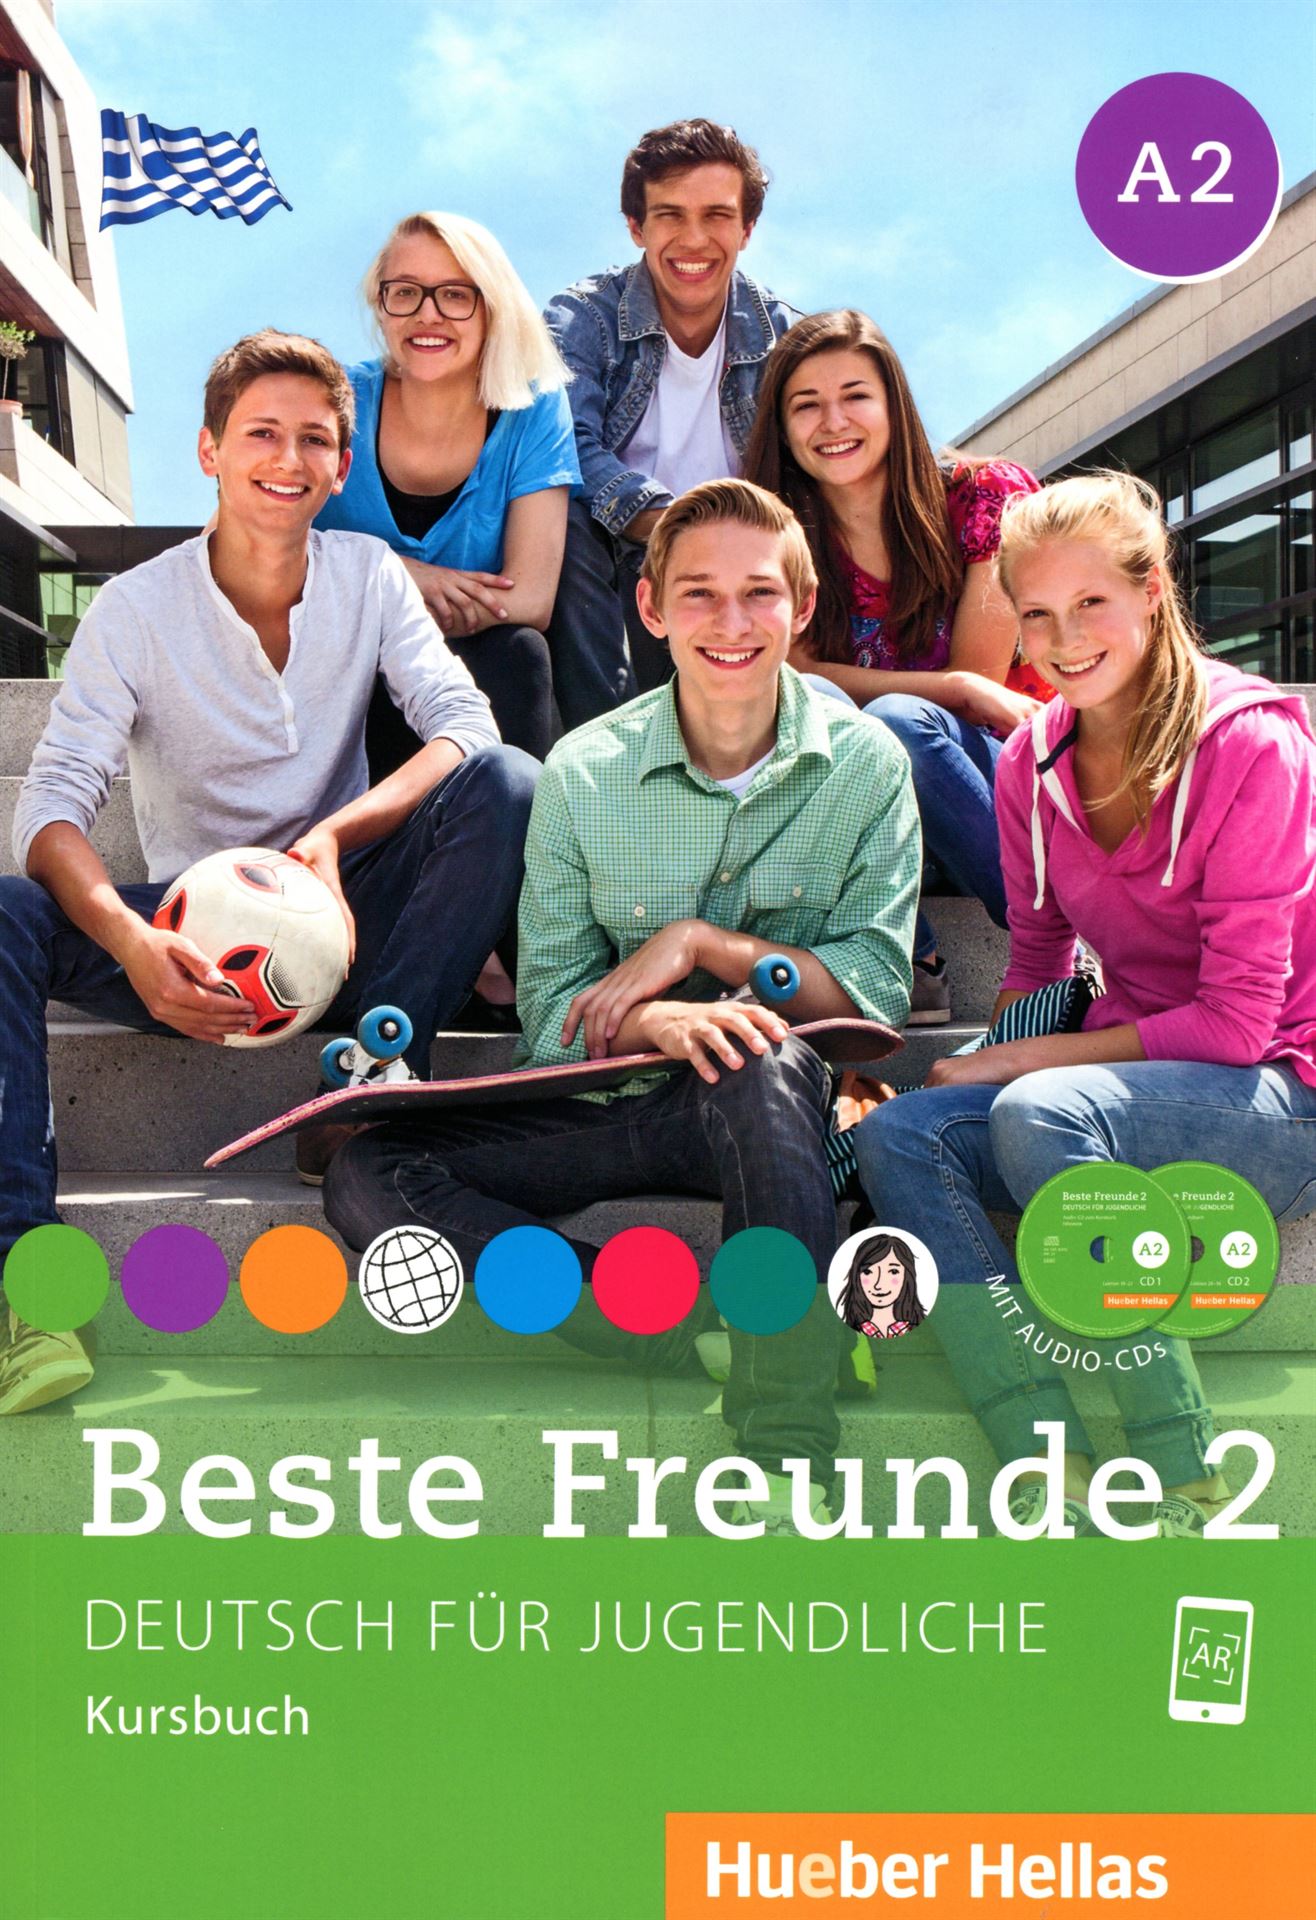 Beste Freunde 2 - Kursbuch